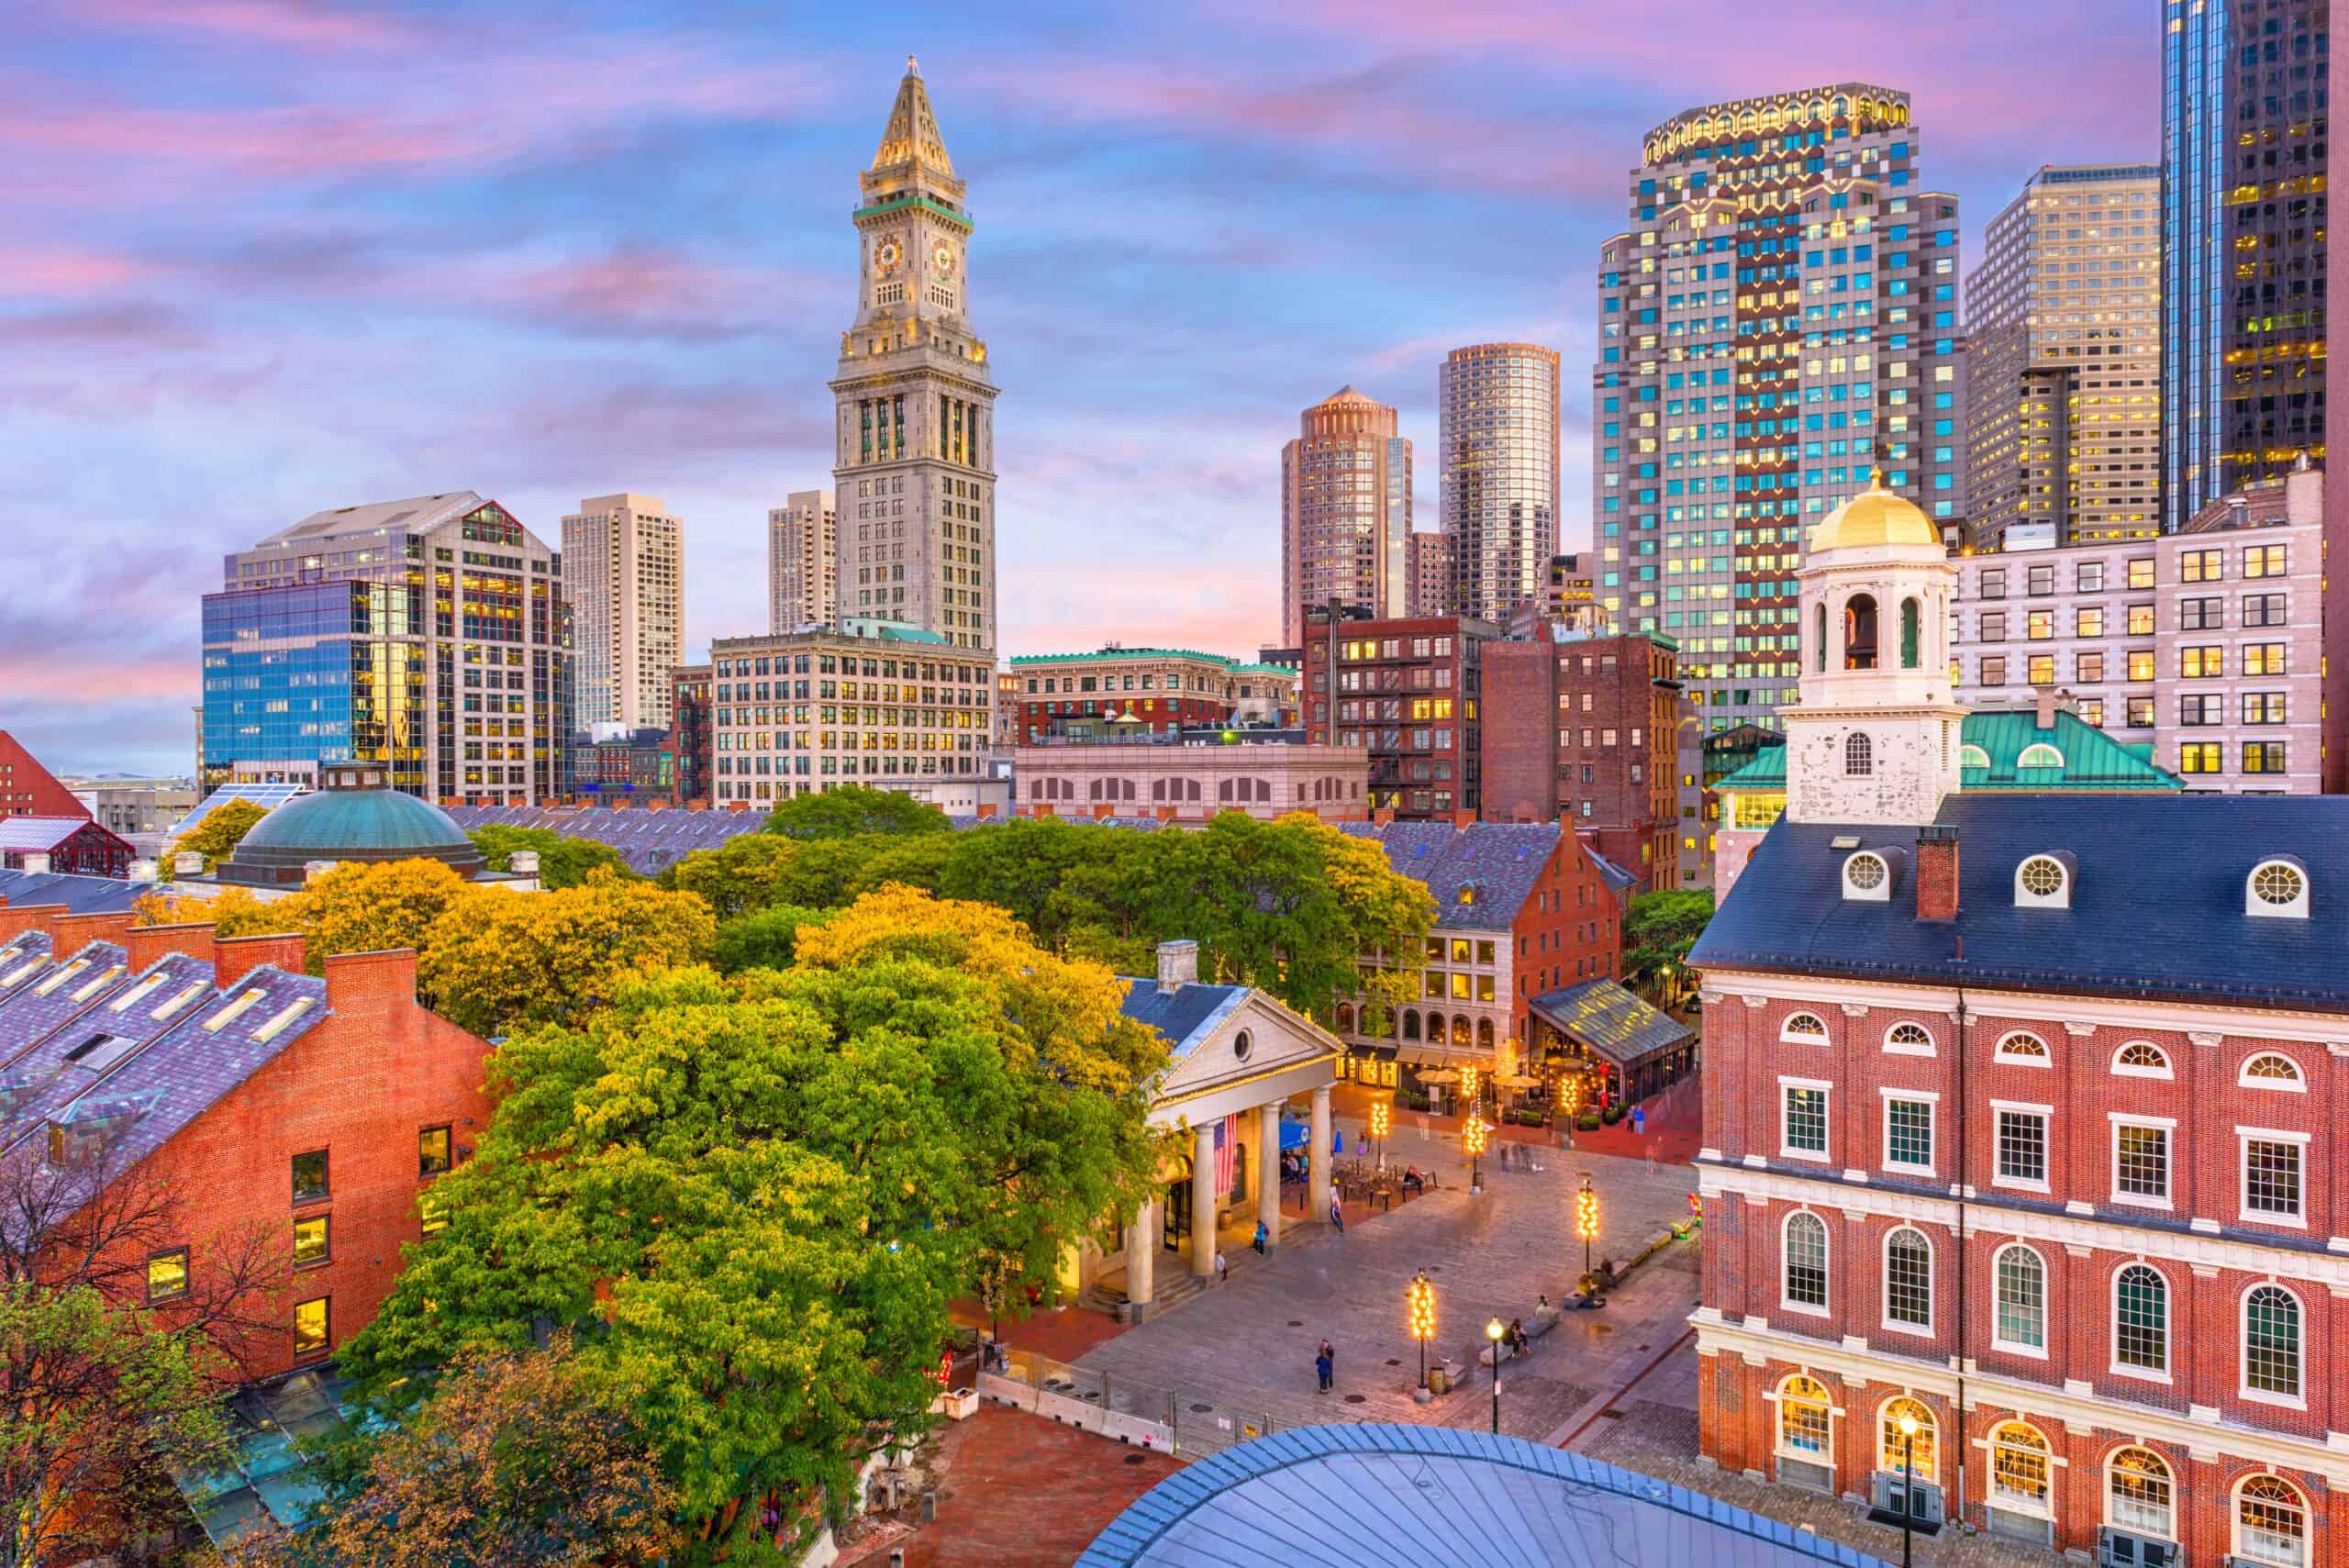 Boston, Massachusetts | Boston, Massachusetts, USA